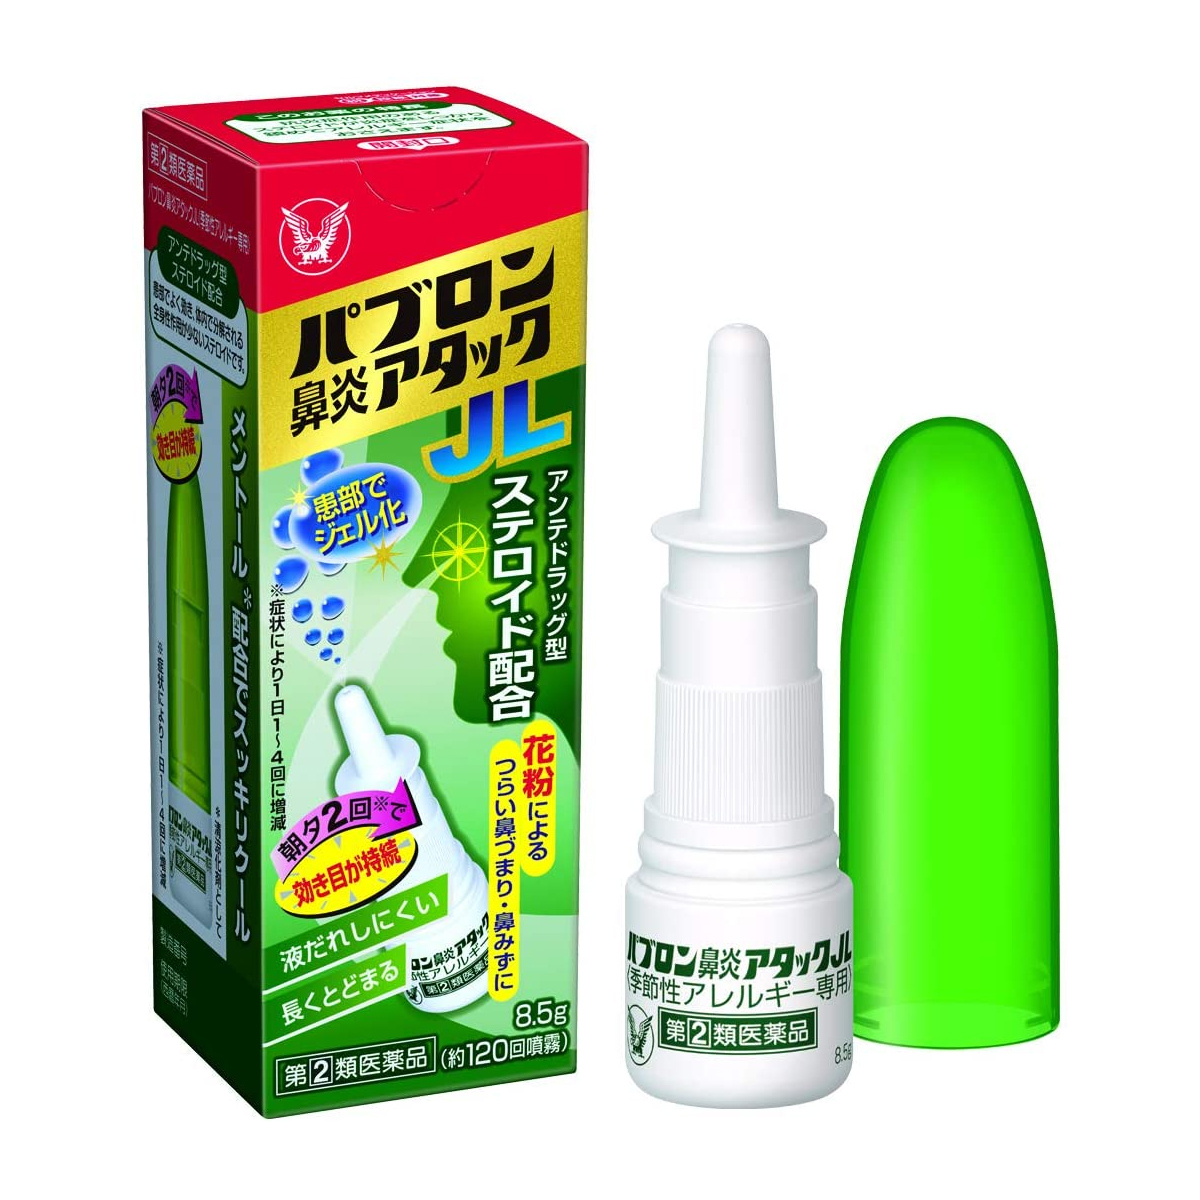 大正製薬 大正製薬 パブロン鼻炎アタックJL 8.5g×1個 パブロン 鼻スプレーの商品画像